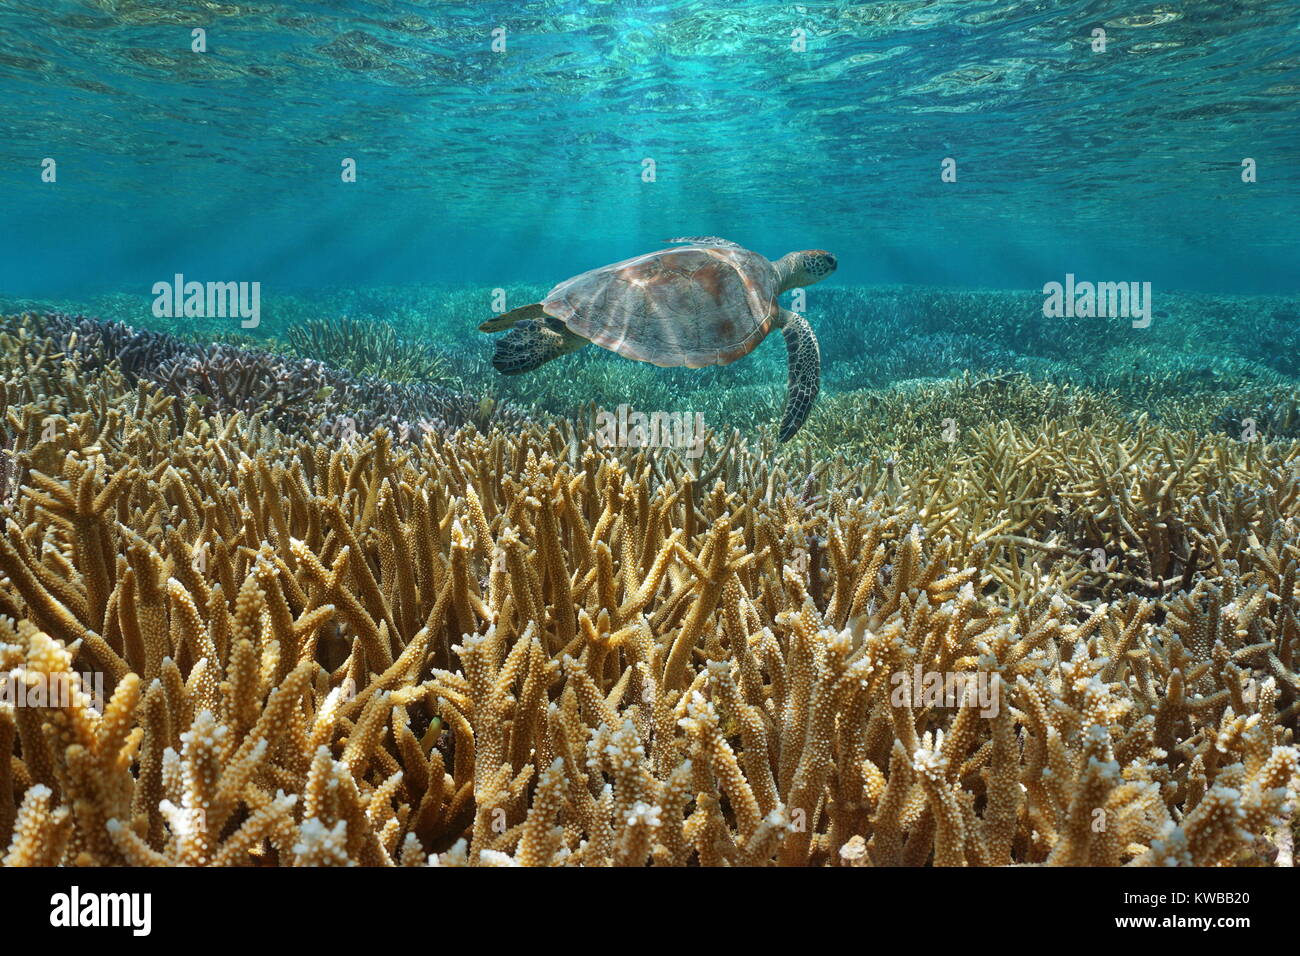 Sous-marines des récifs coralliens avec une tortue de mer verte nage entre surface de l'eau et des coraux, l'océan Pacifique, la Nouvelle Calédonie, Océanie Banque D'Images